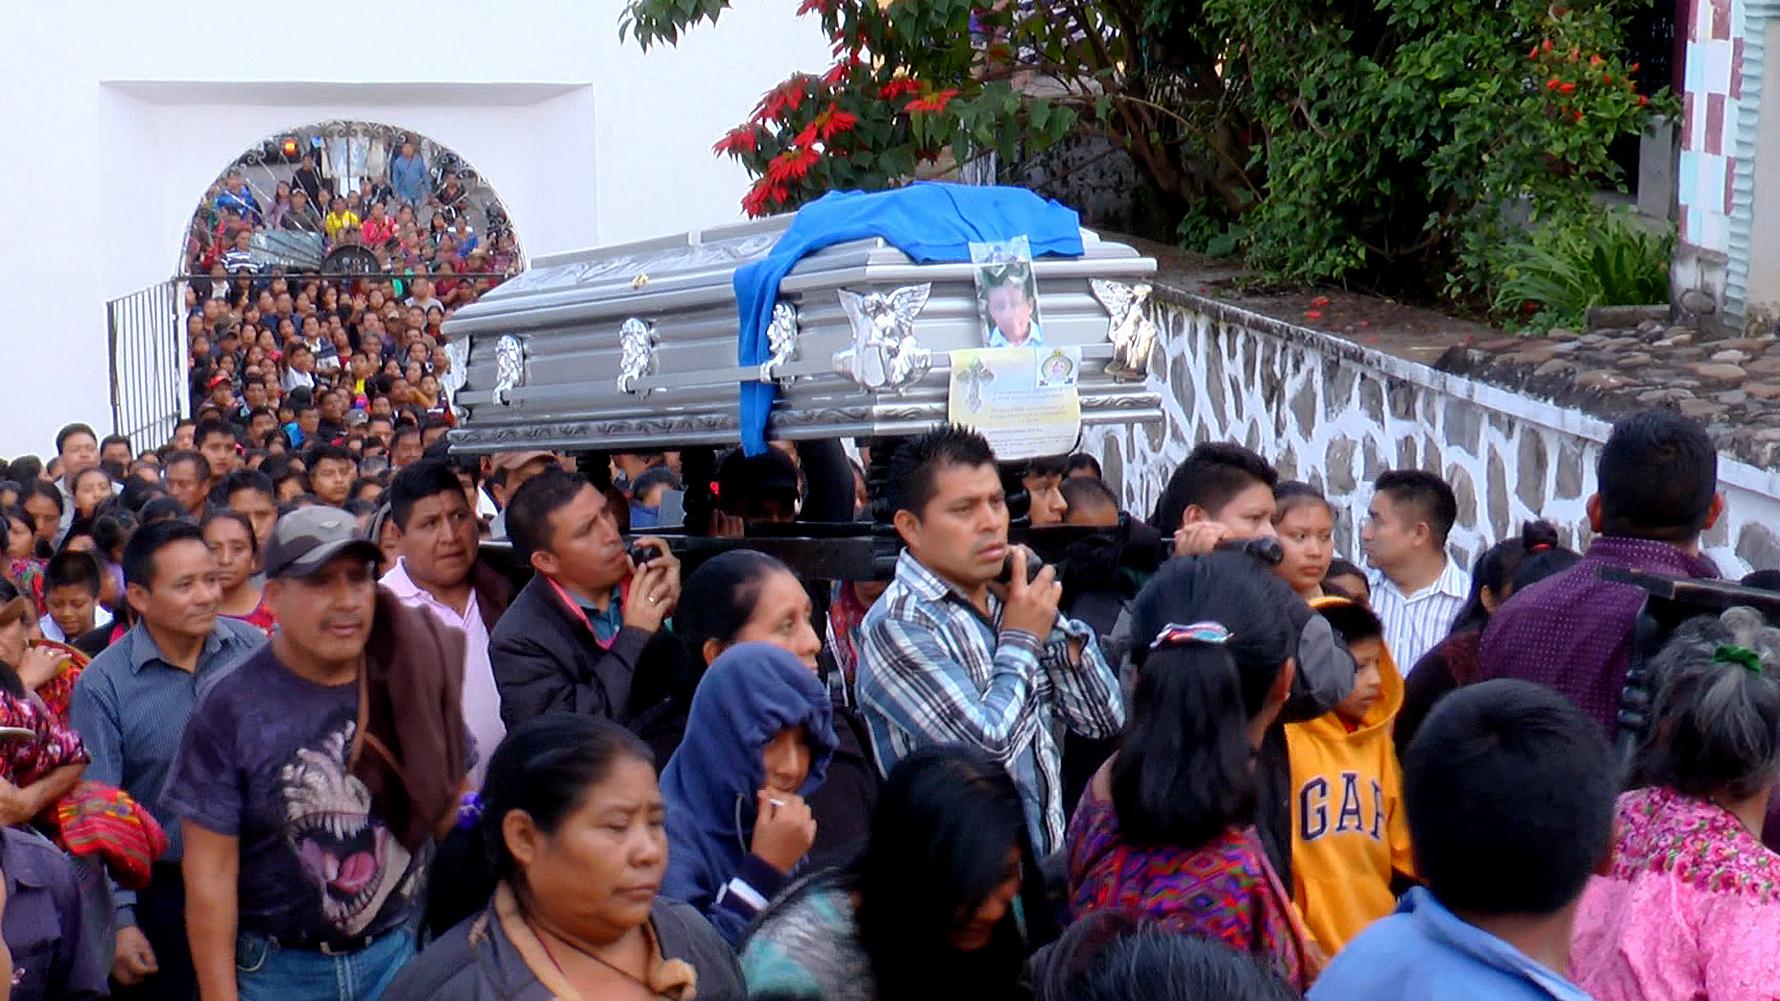 Un grupo de hombres carga el ataúd con el cuerpo del niño Absalón, en la entrada al cementerio municipal de Chichicastenango. El entierro tuvo lugar el 20 de octubre de 2017 y fue multitudinario. Foto cortesía Canal 4 Chichi.